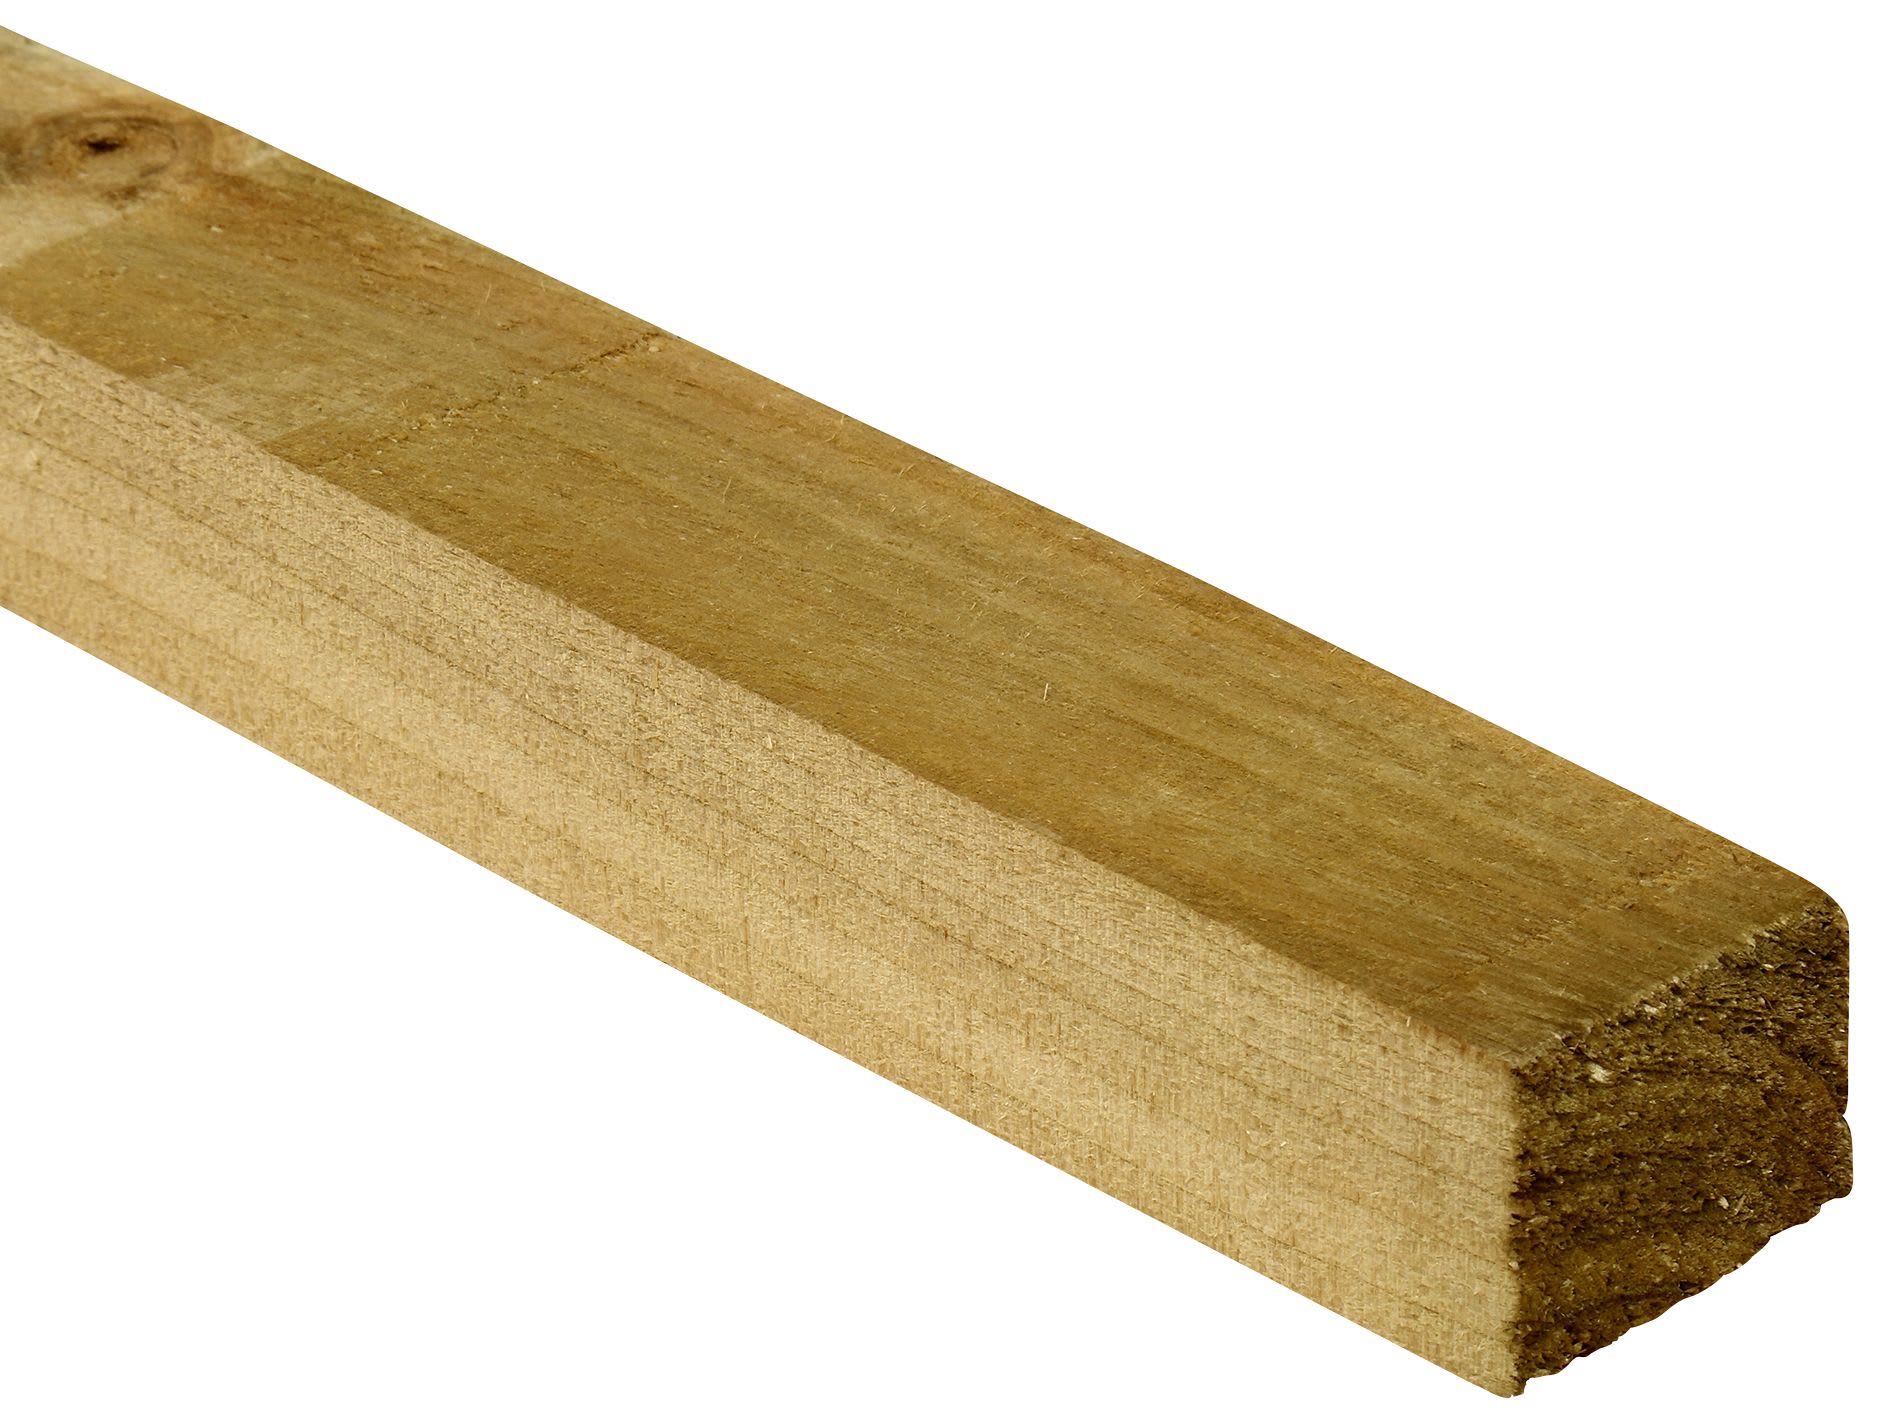 Treated Sawn Kiln Dried Timber - 45 x